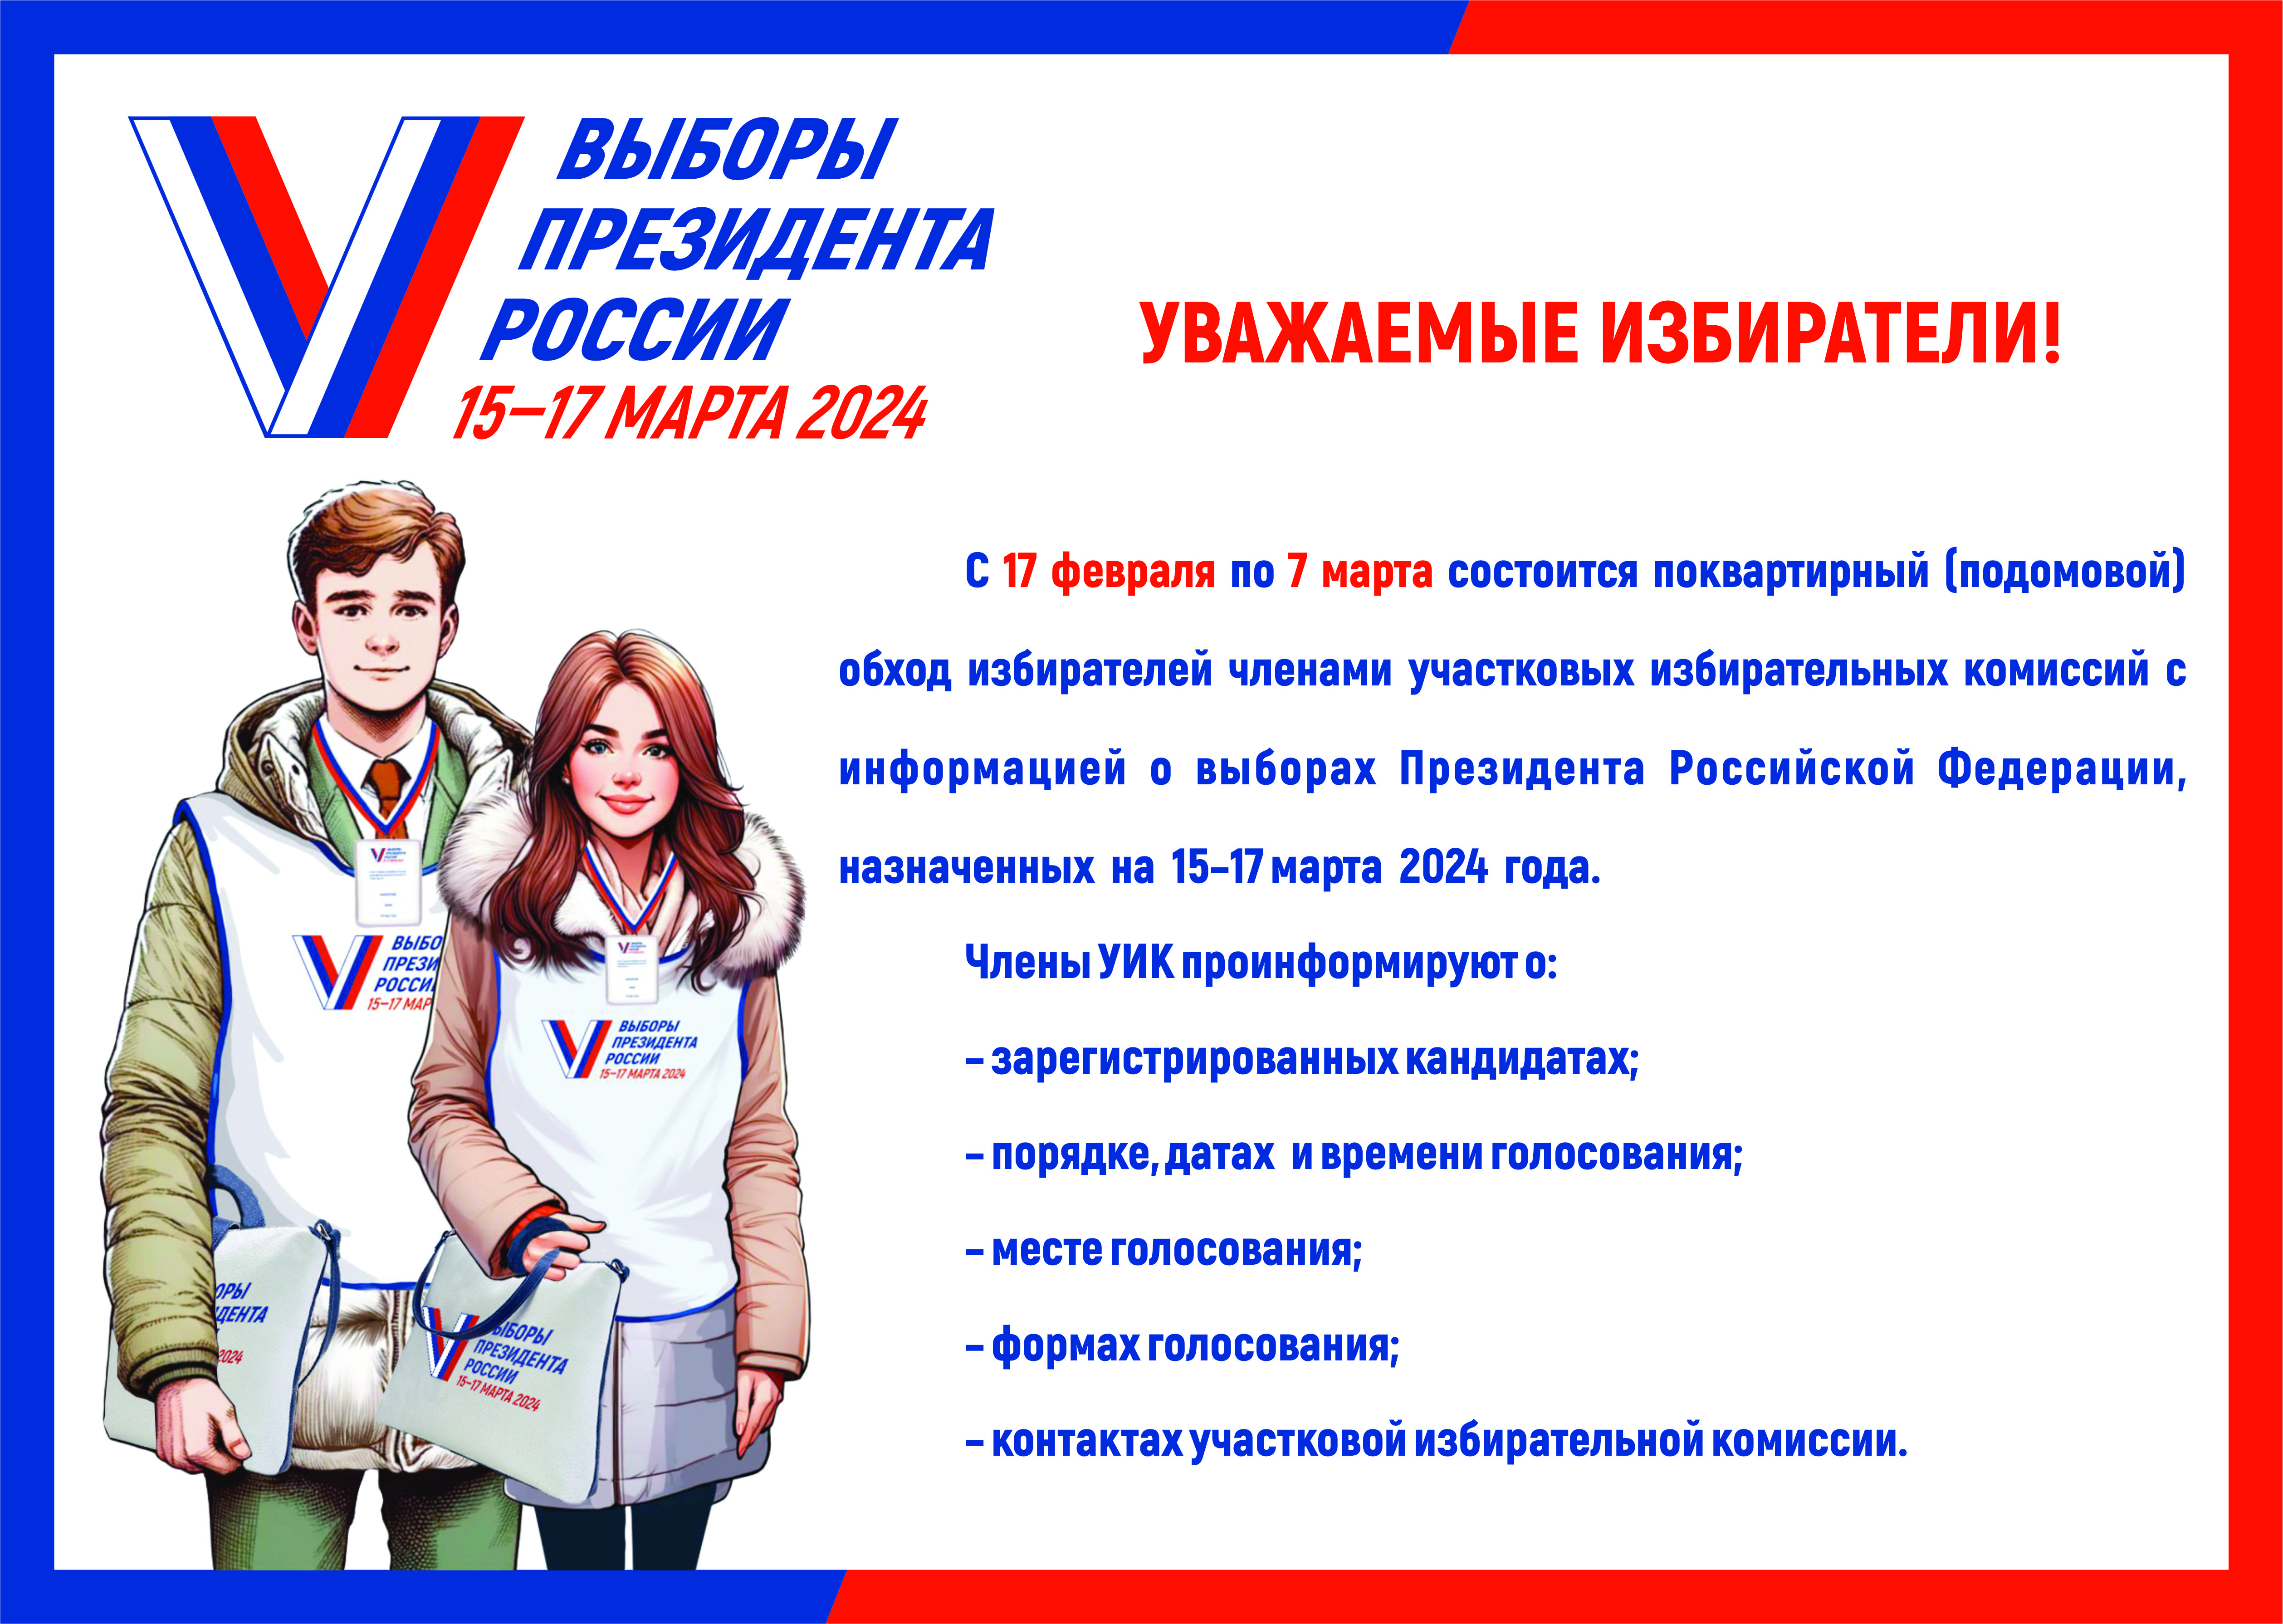 Жителей Курганской области персонально проинформируют о выборах Президента России.